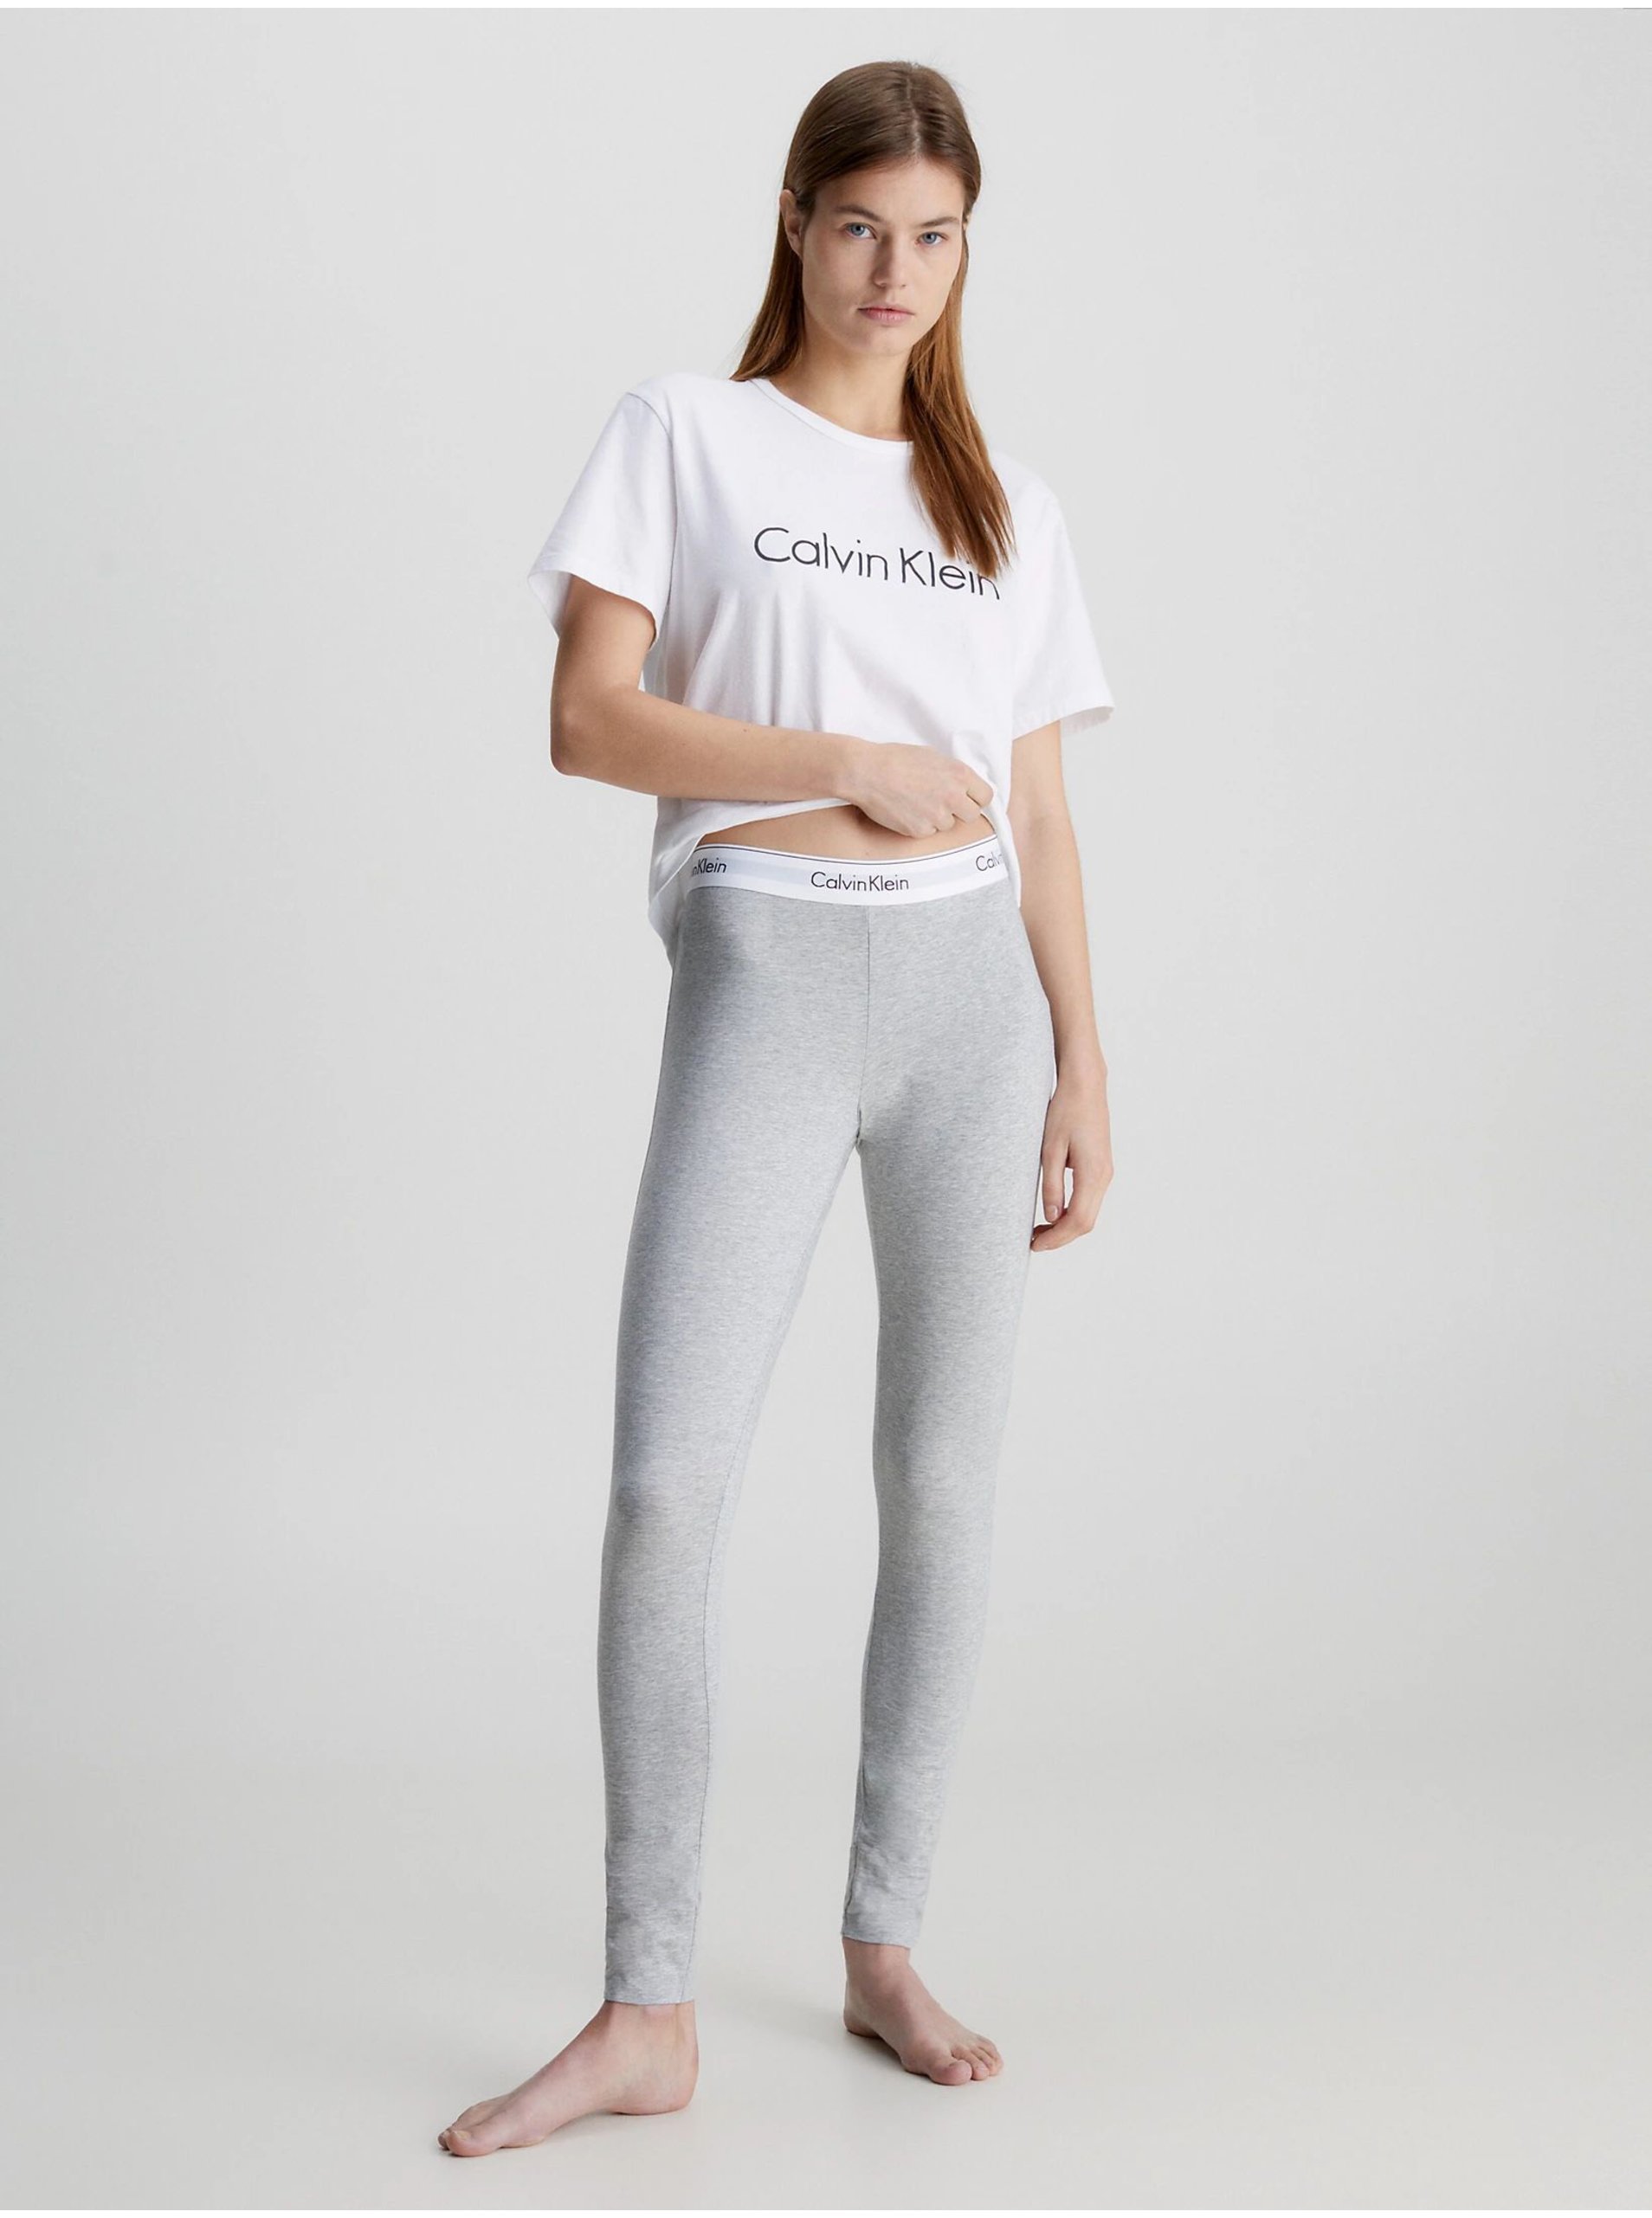 E-shop Calvin Klein sivé nohavice Legging Pant s bielou širokou gumou